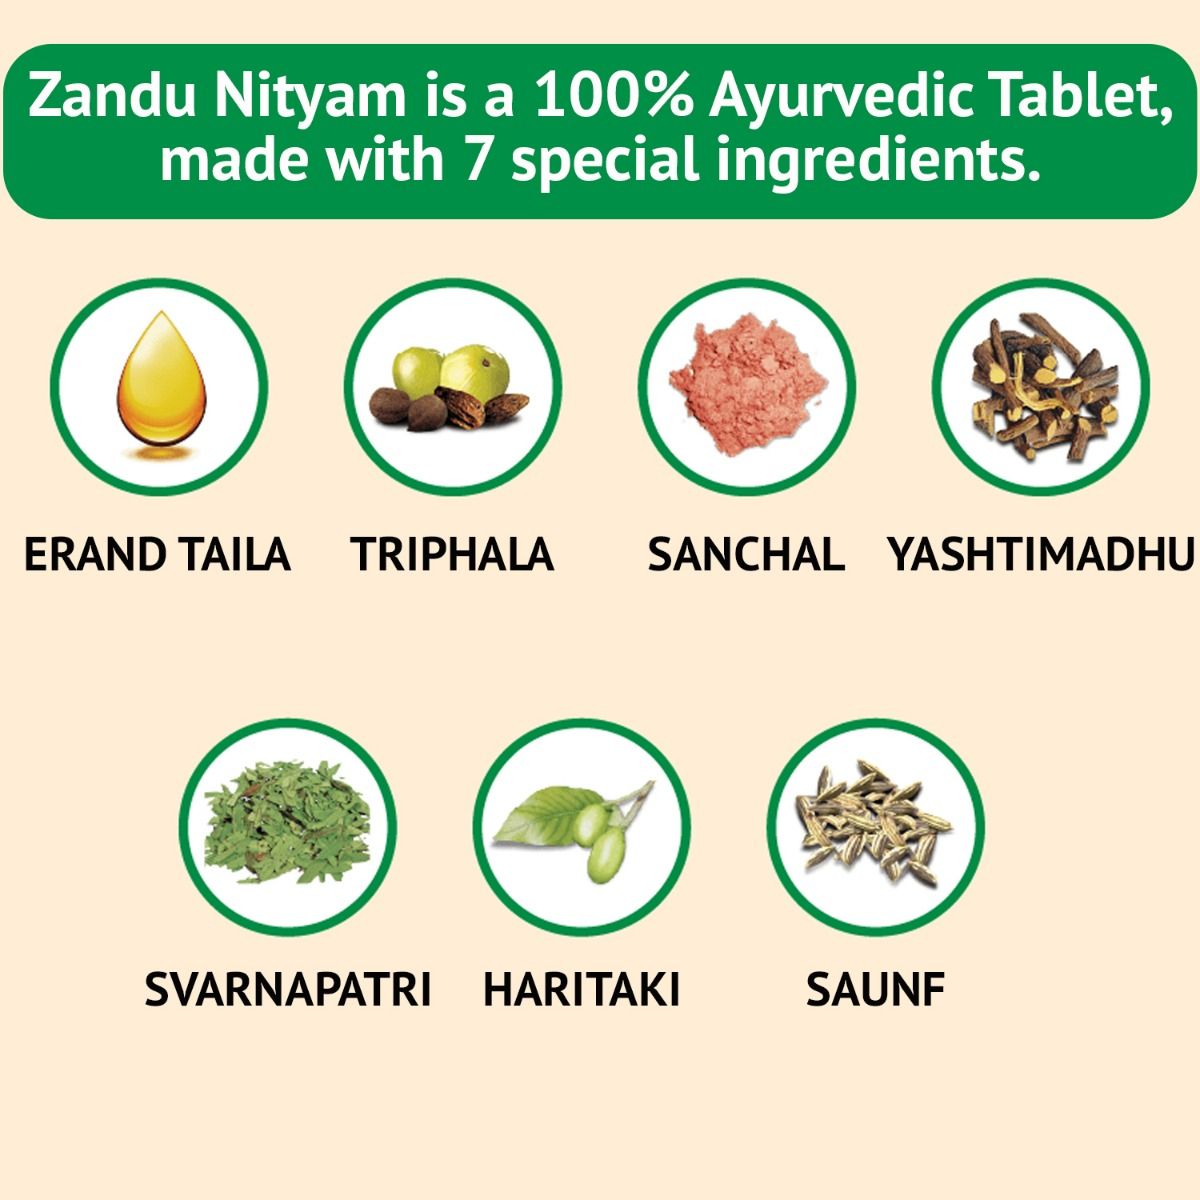 Zandu Nityam Ayurvedic Laxative, 30 Tablets, Pack of 1 